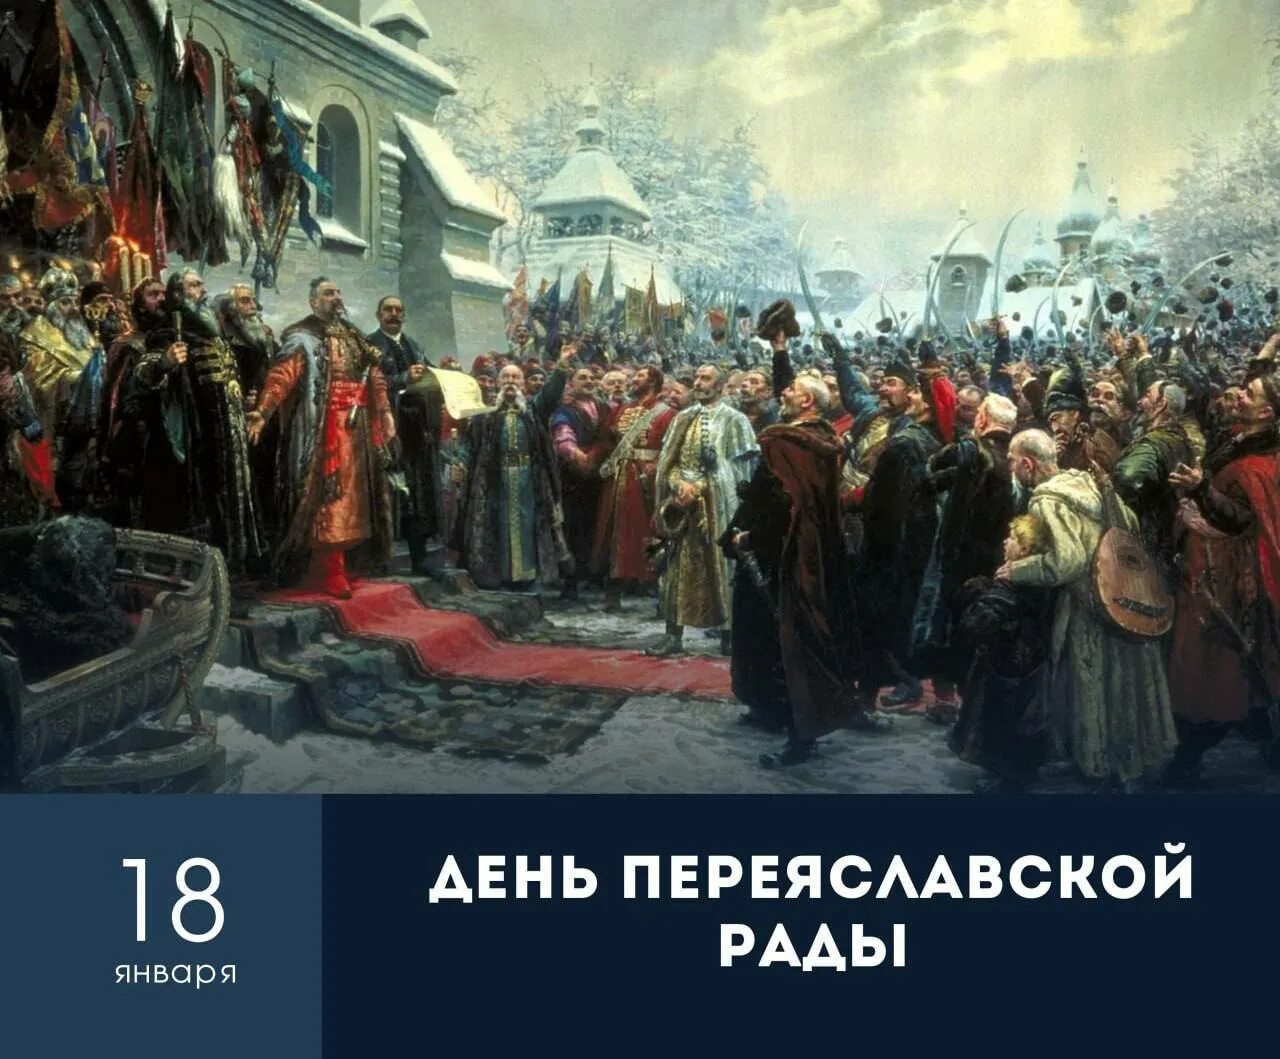 Переяславской раде 1654 года. Переяславская рада 1654 картина. 18 Января 1654 — состоялась Переяславская рада.